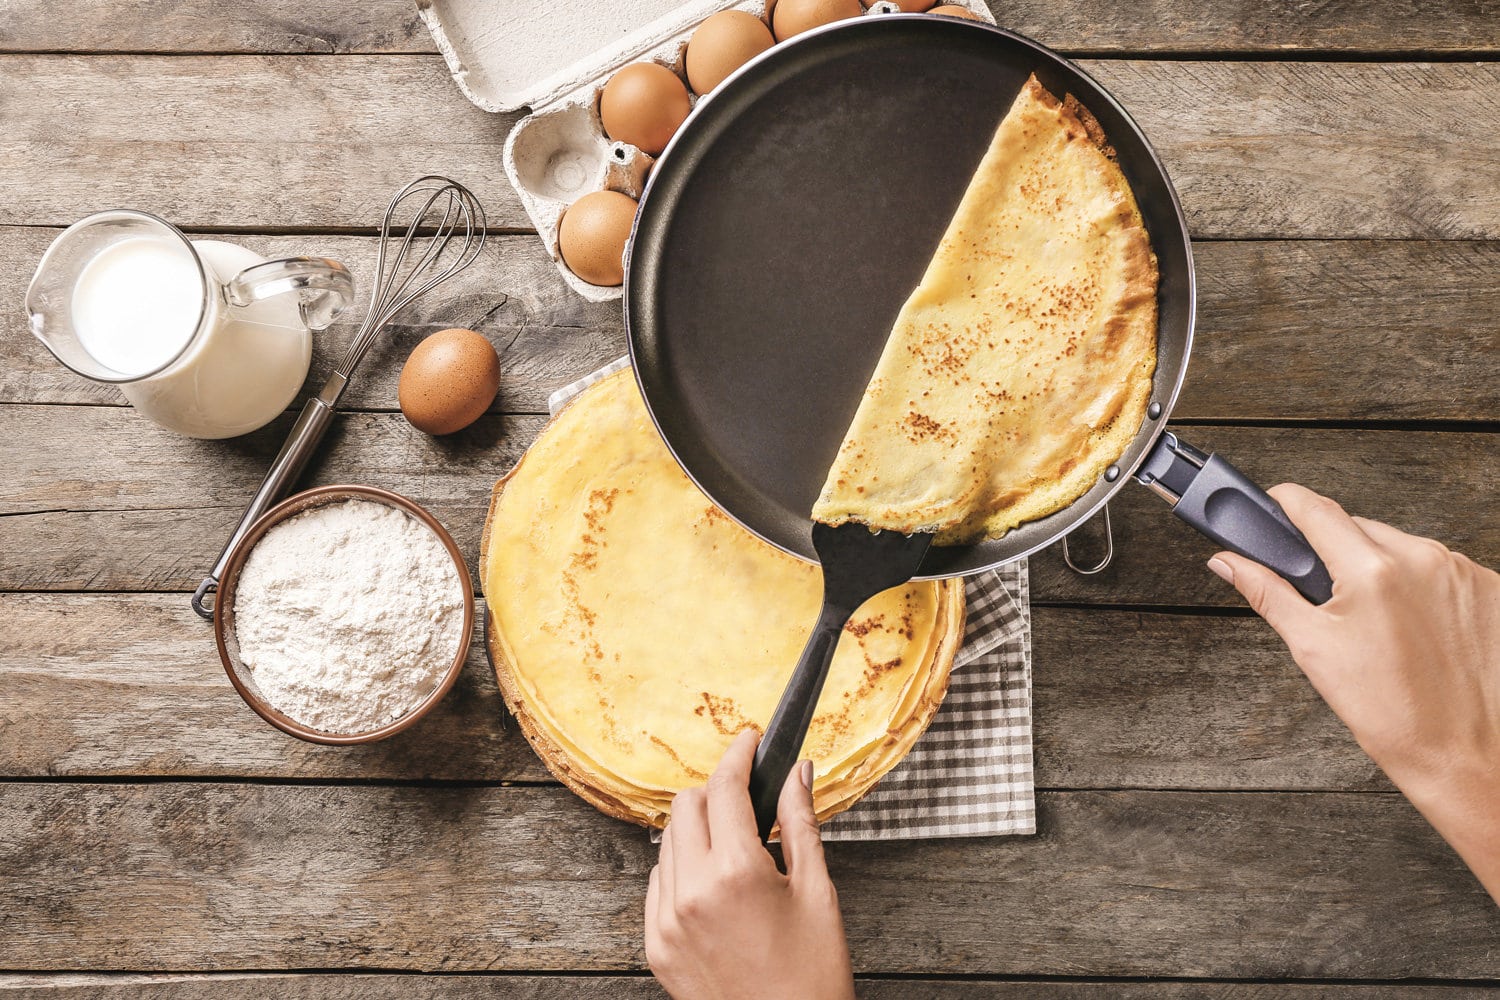 Woman making thin pancakes on frying pan in kitchen.